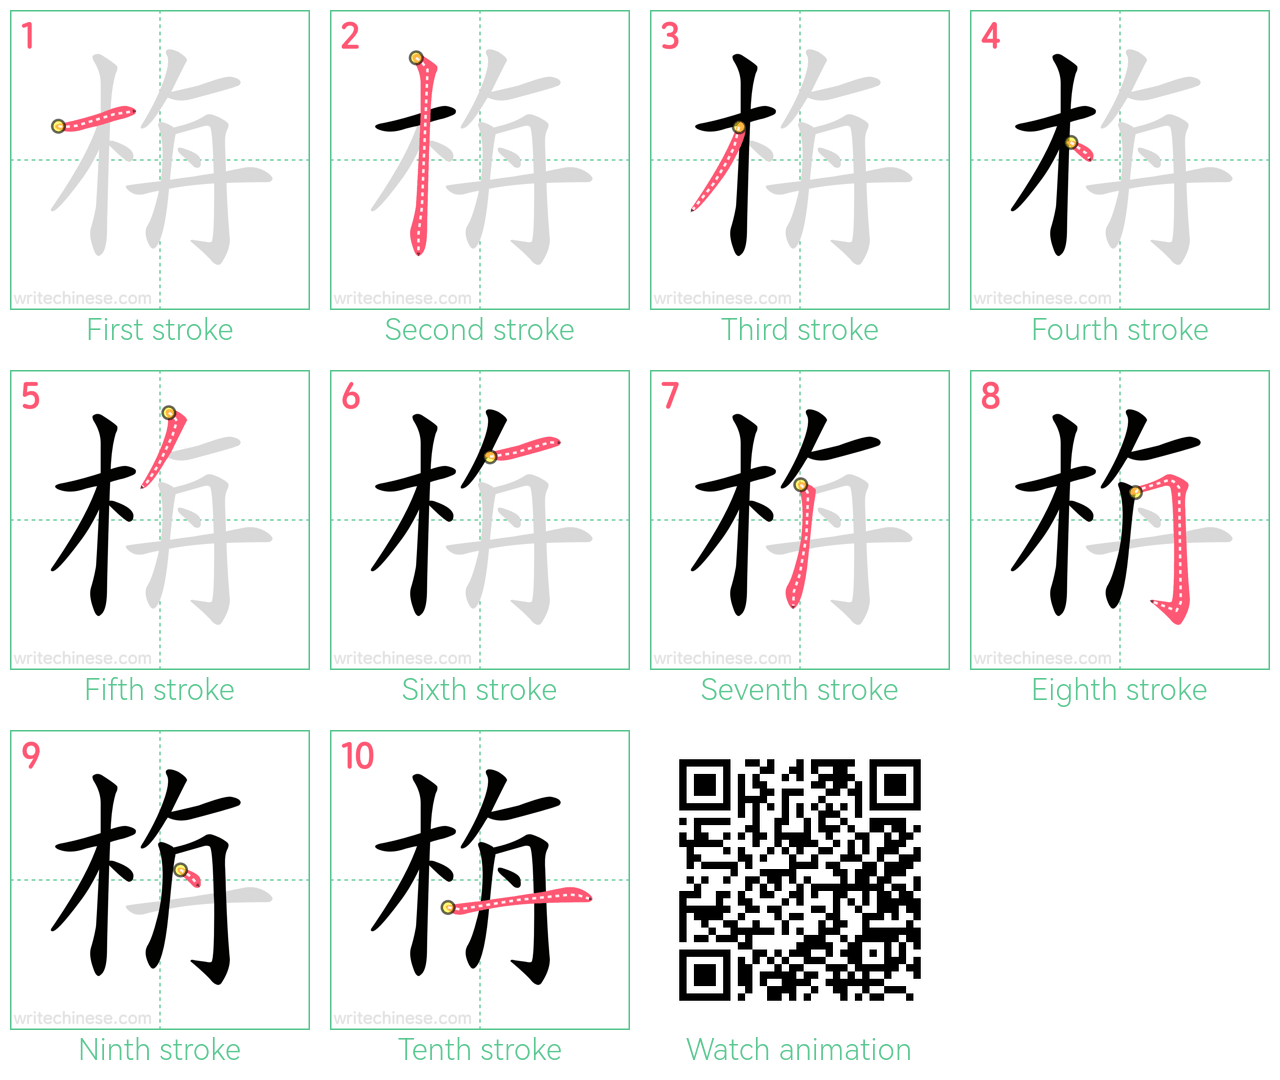 栴 step-by-step stroke order diagrams